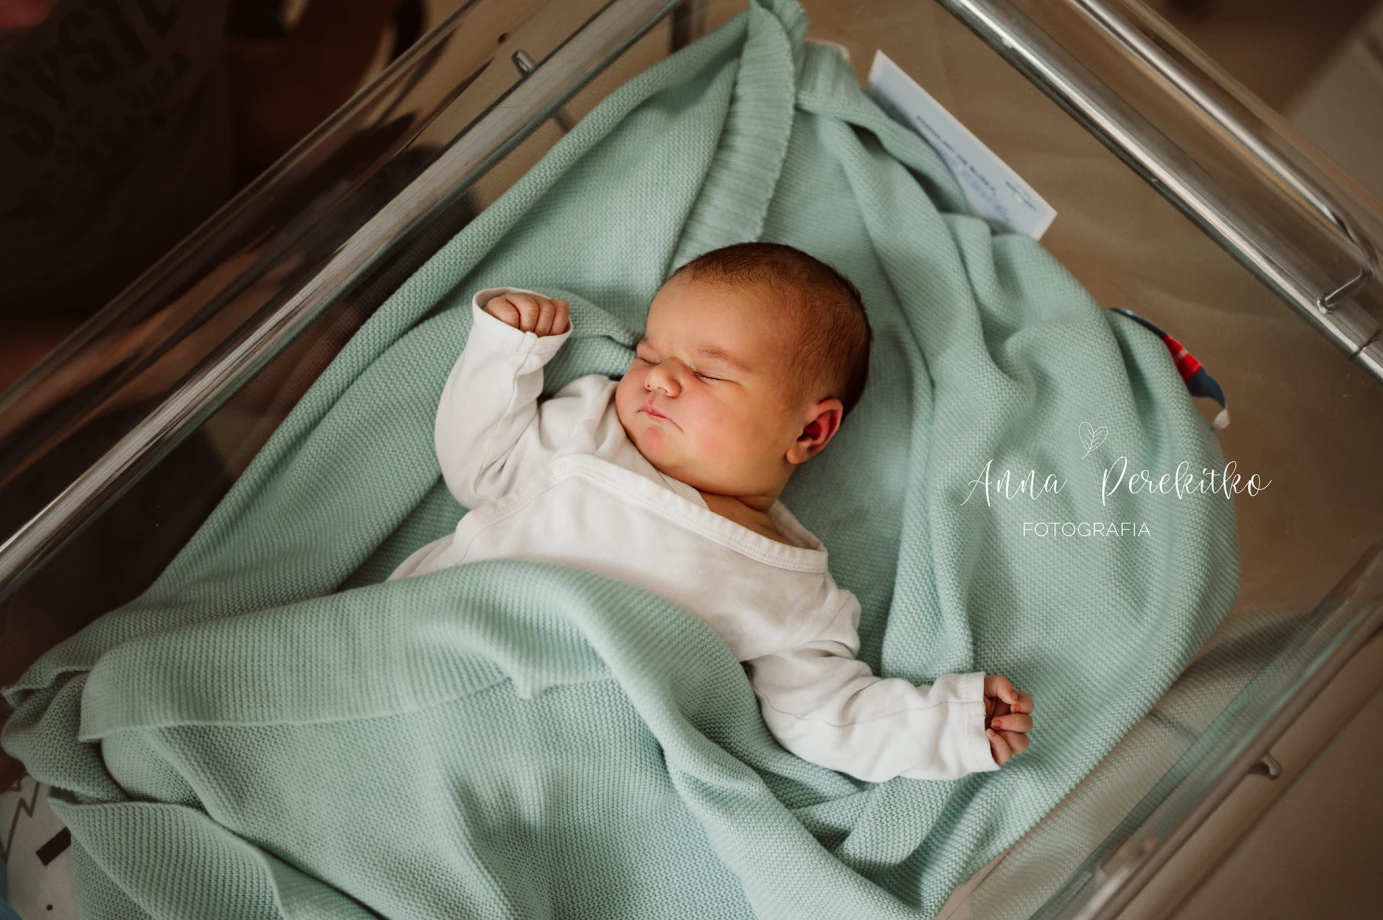 zdjęcia warszawa fotograf anna-perekitko portfolio zdjecia noworodkow sesje noworodkowe niemowlę